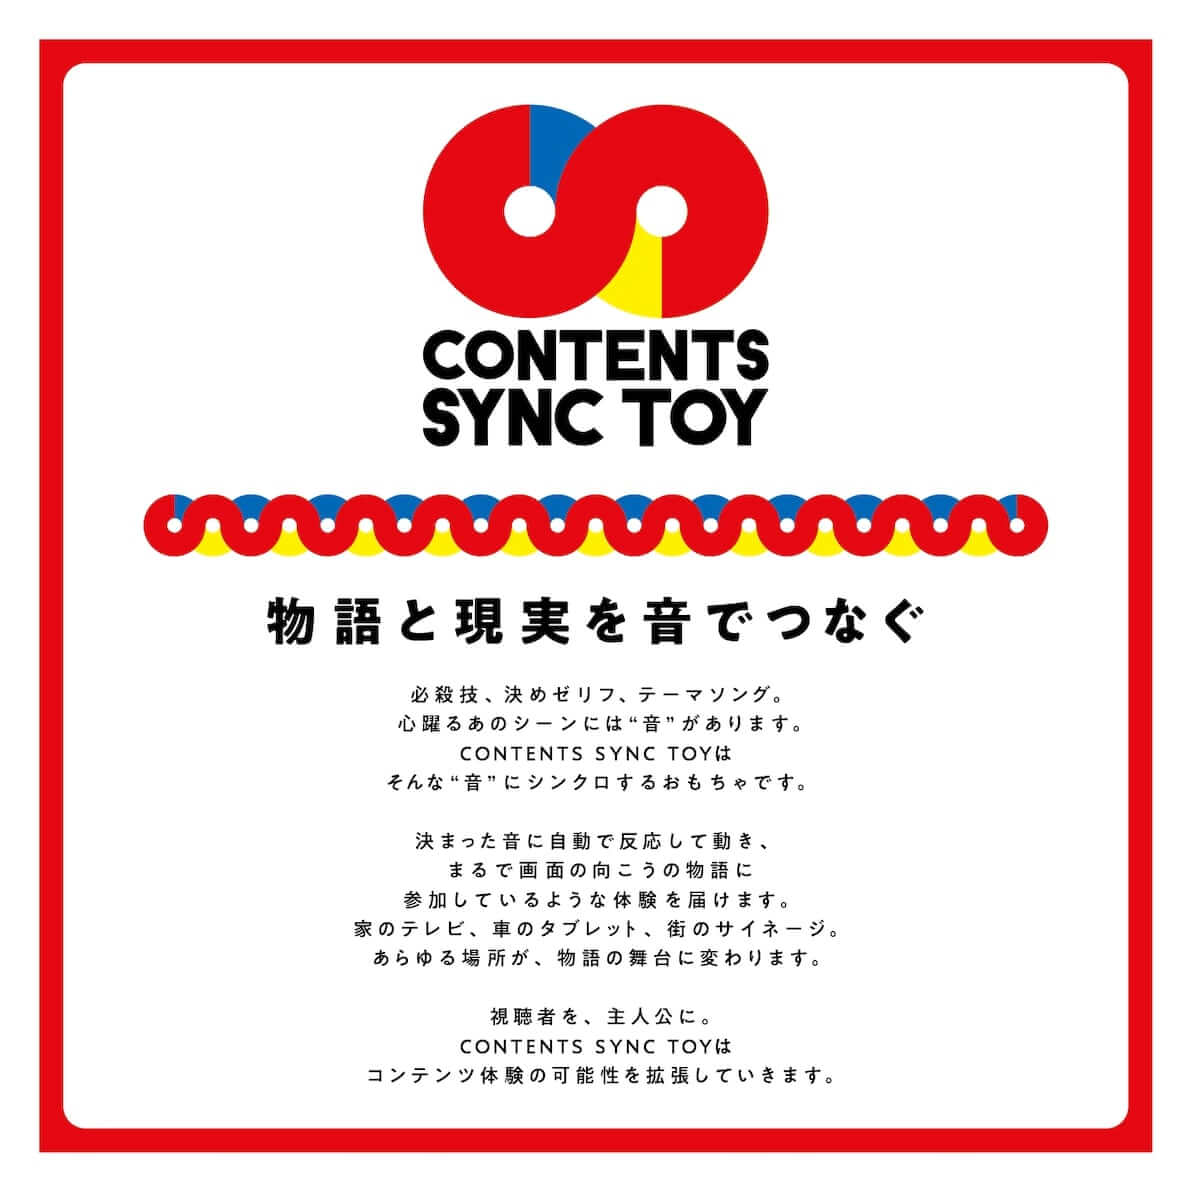 映像に参加できる『CONTENTS SYNC TOY』、プロトタイプを発表